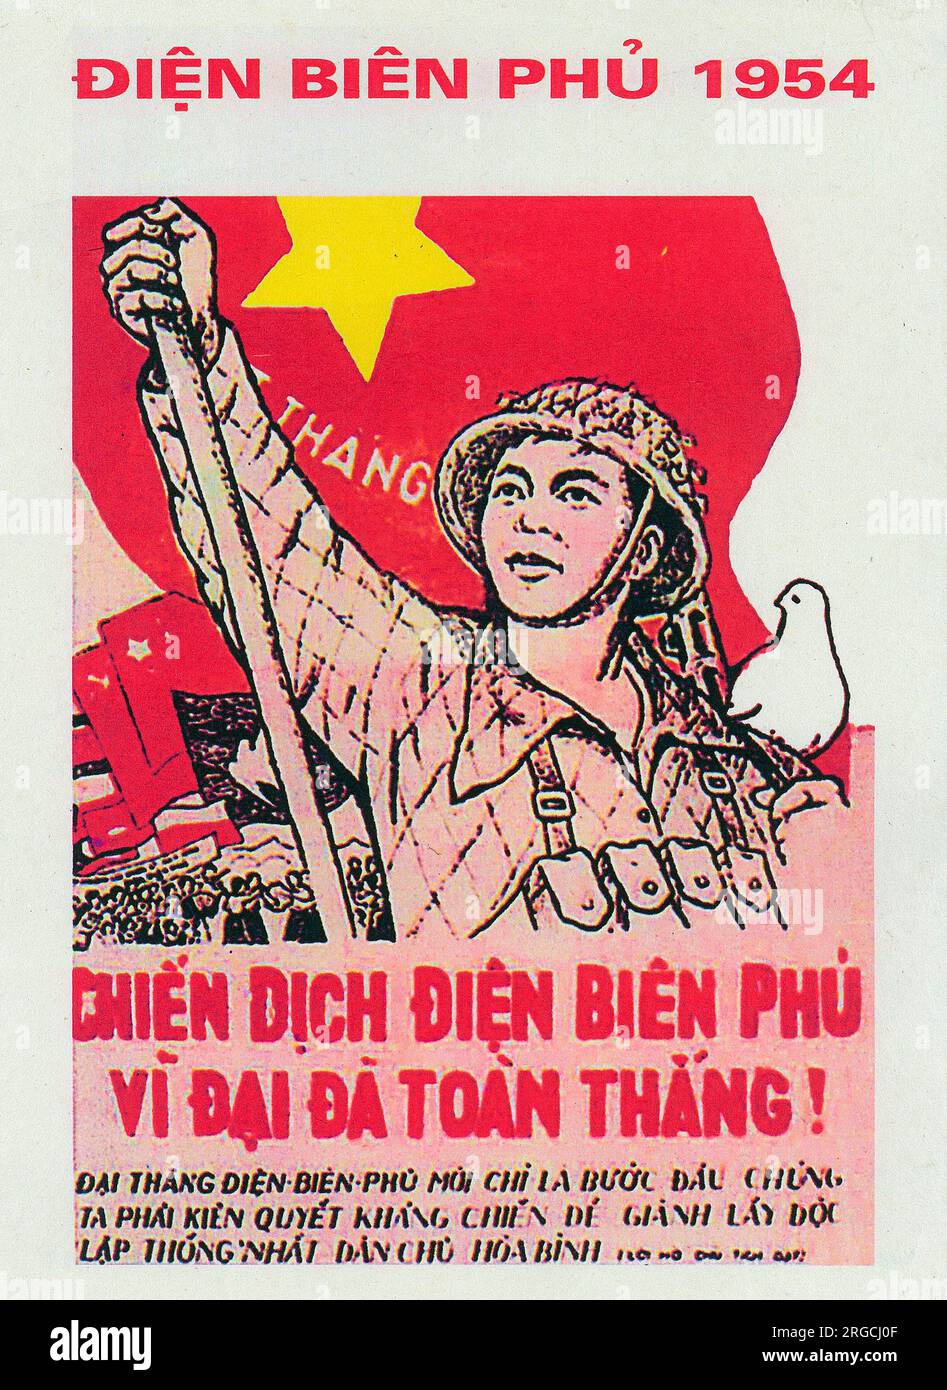 Guerra del Vietnam - poster patriottico vietnamita - "Victory and Dien Bien Phu" - sconfitta delle forze francesi nel 1954 ricordata come una richiesta di ulteriore successo. La battaglia di Dien Bien Phu fu uno scontro culminante della prima guerra d'Indocina che ebbe luogo tra il 13 marzo e il 7 maggio 1954 Foto Stock